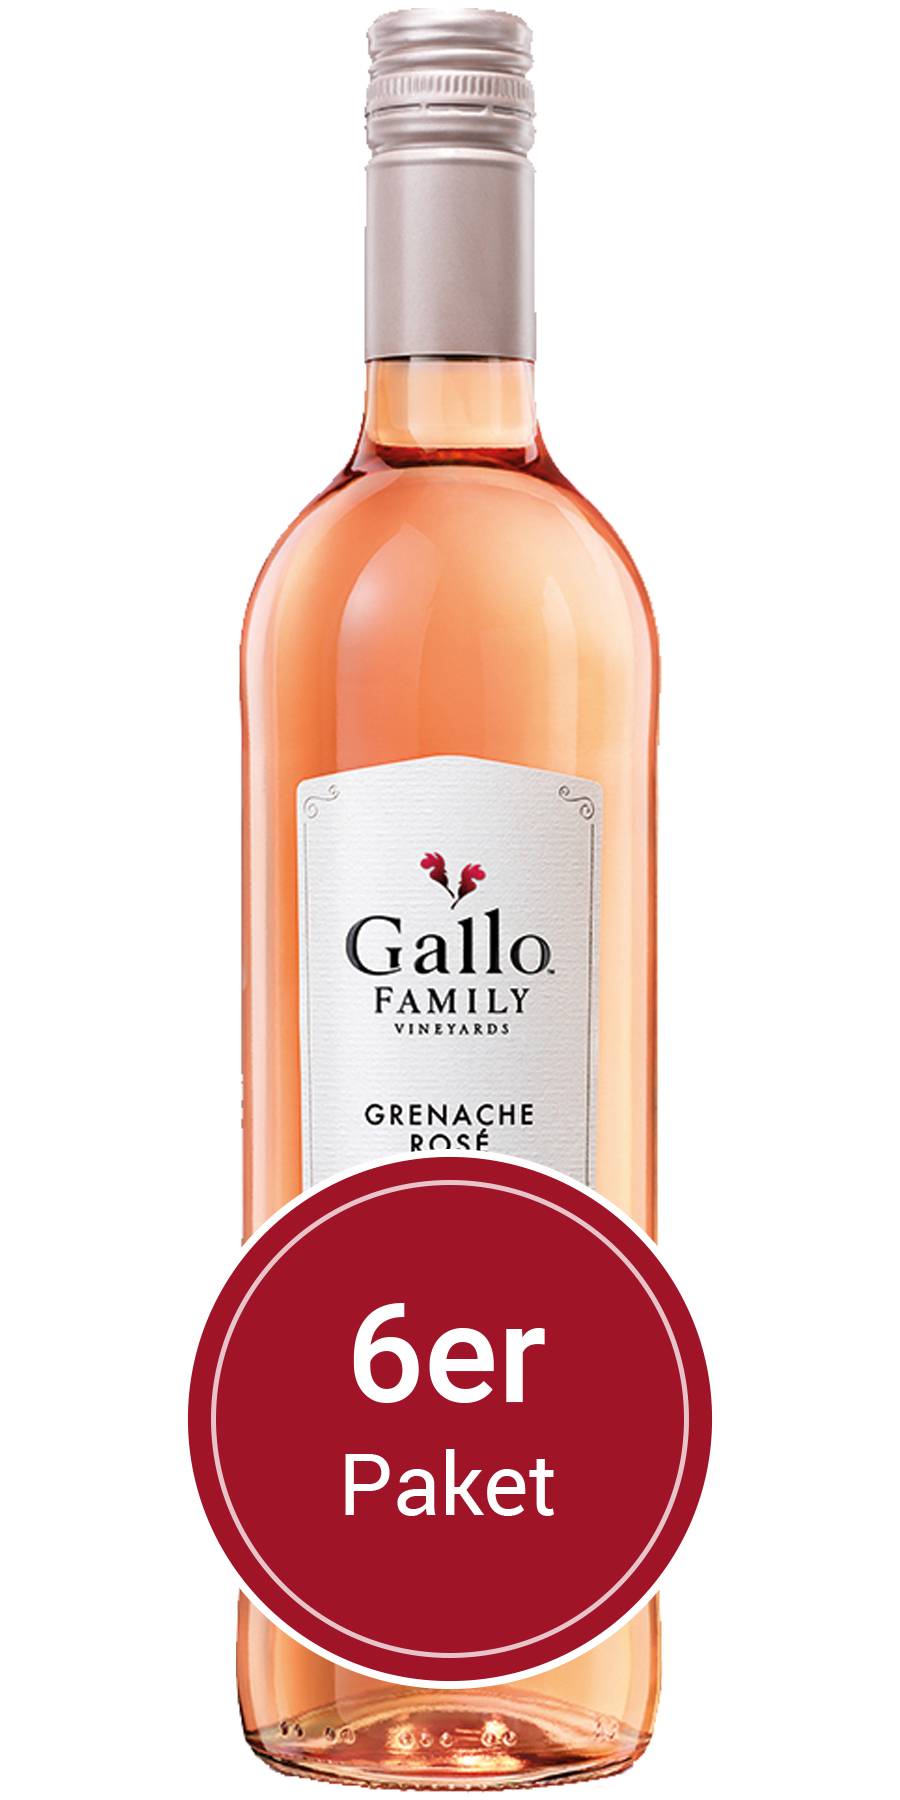 6 Gallo Kalifornien Family Grenache Flaschen Rose, l Vineyards, 0,75